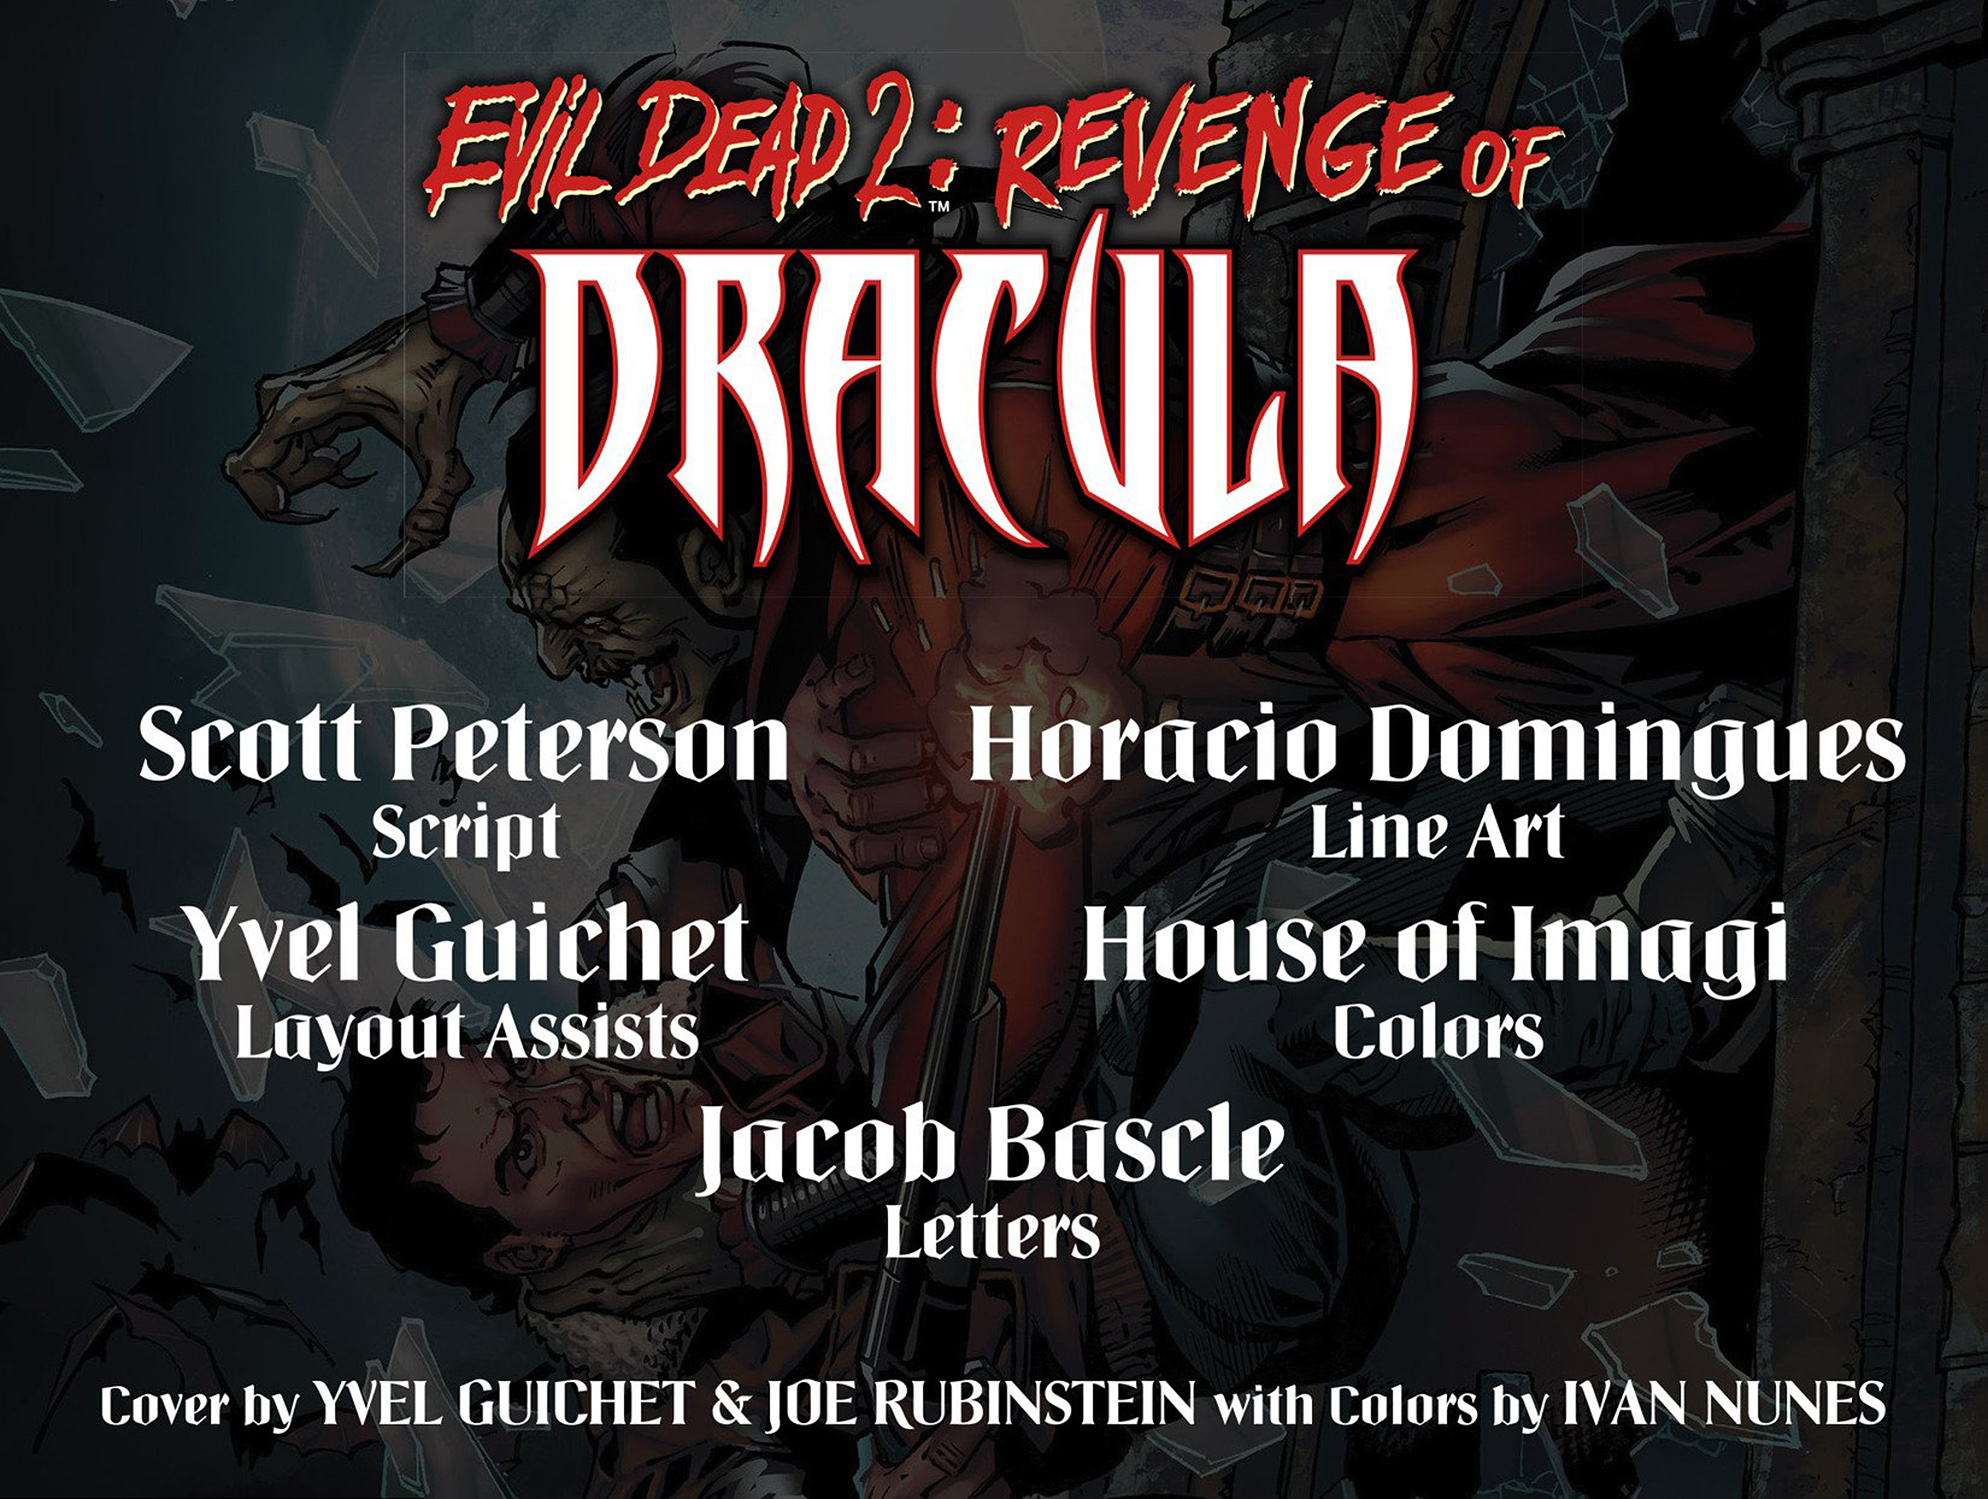 Read online Evil Dead 2: Revenge of Dracula comic -  Issue #1 - 2